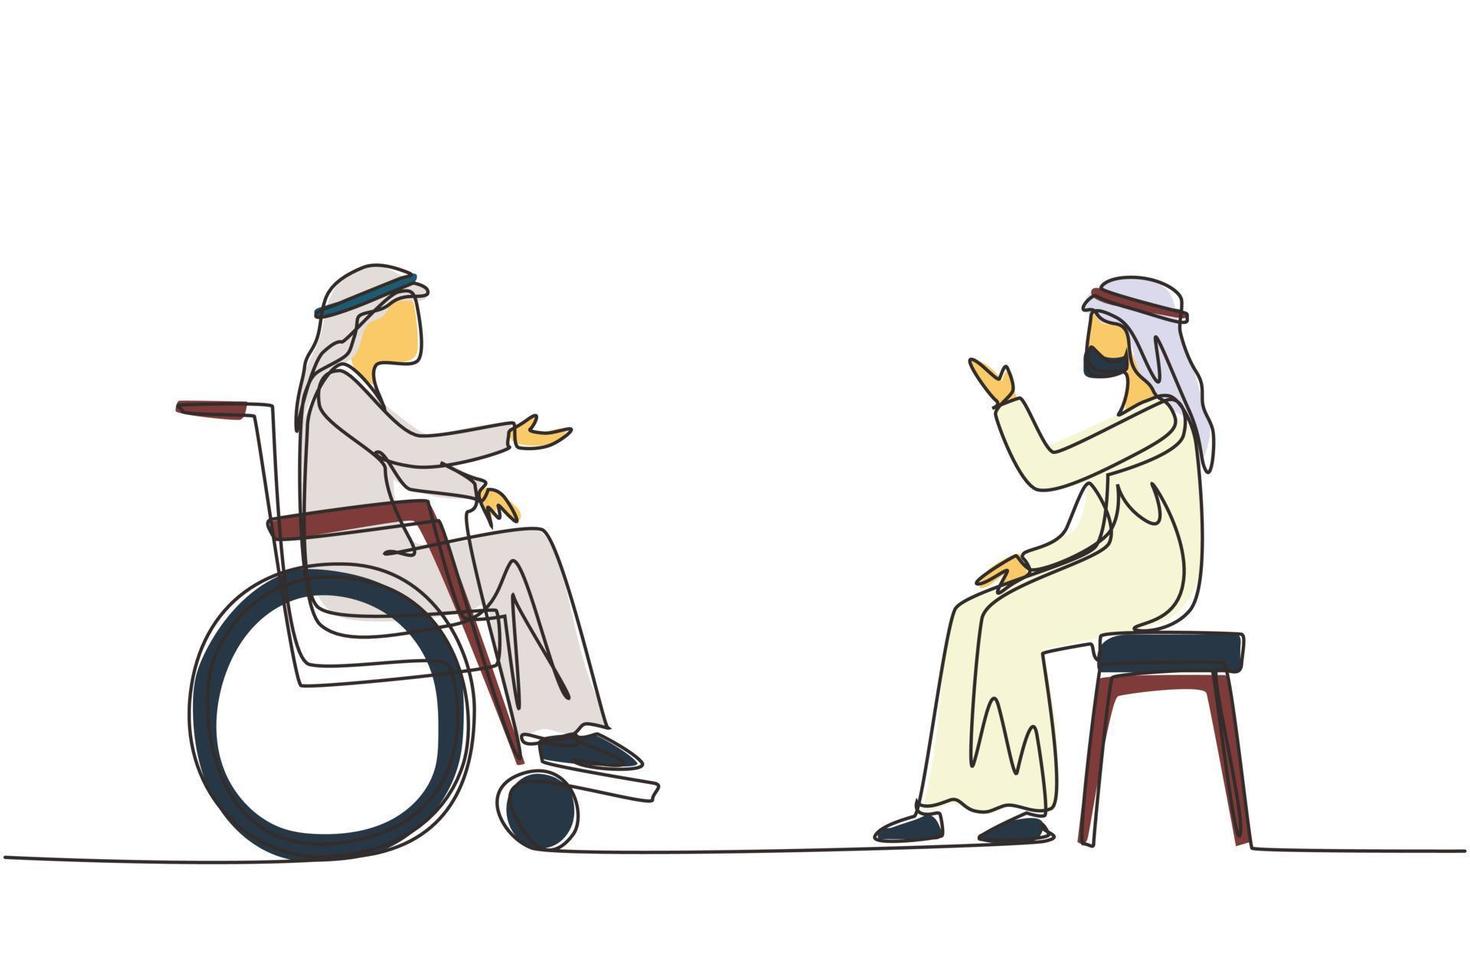 enda kontinuerlig linjeritning två araber som sitter och chattar, en använder stol, en använder rullstol. vänlig man pratar med varandra, mänskliga funktionshindrade samhället. en linje rita design vektor